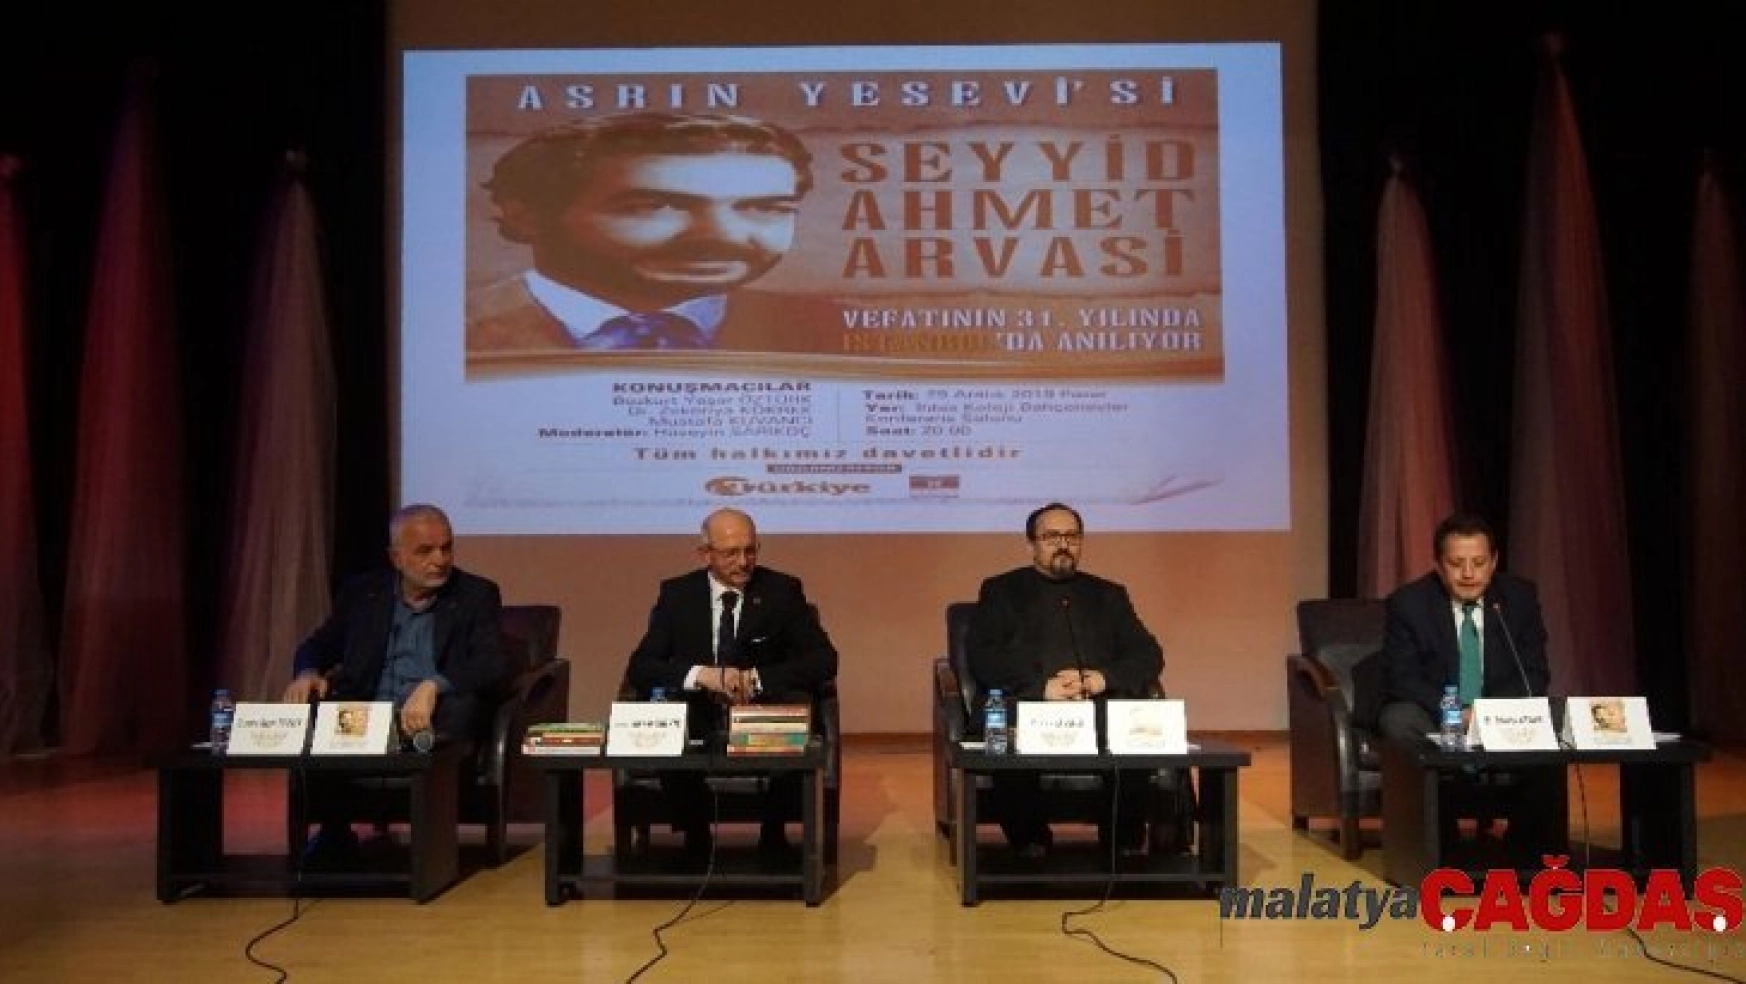 Türk İslam Ülküsü'nün mimarı Seyyid Ahmet Arvasi, vefatının 31. yılında anıldı